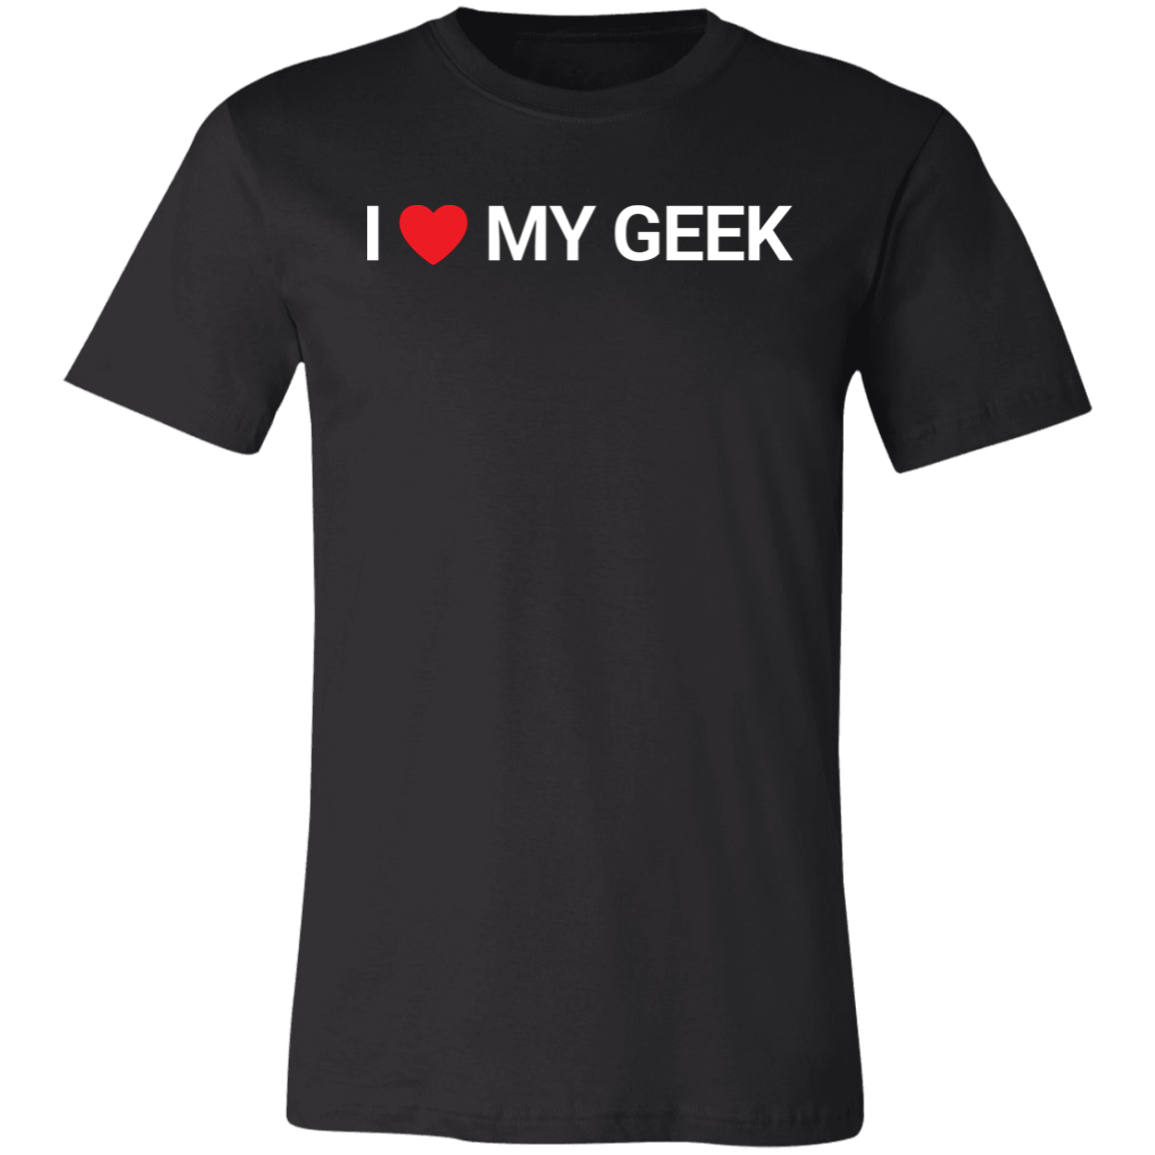 I Heart My Geek Short-Sleeve T-Shirt